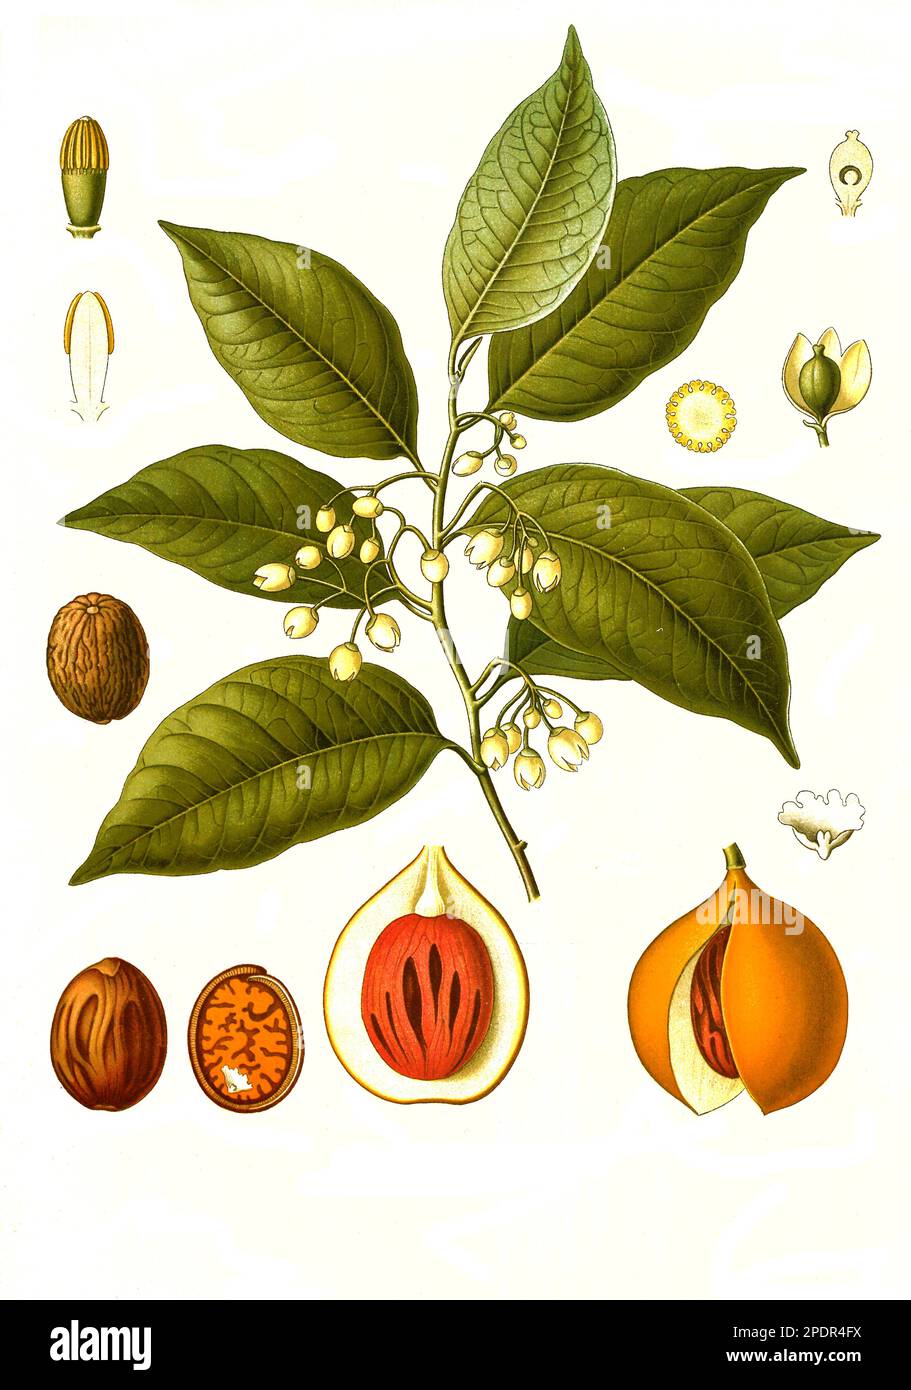 Heilpflanze, Muskatnussbaum, (Myristica fragrans) ist eine Pflanzenart aus der Familie der Muskatnussgewächse, Historisch, ristorante digitale Reproduktion von einer Vorlage aus dem 19. Jahrhundert, Foto Stock